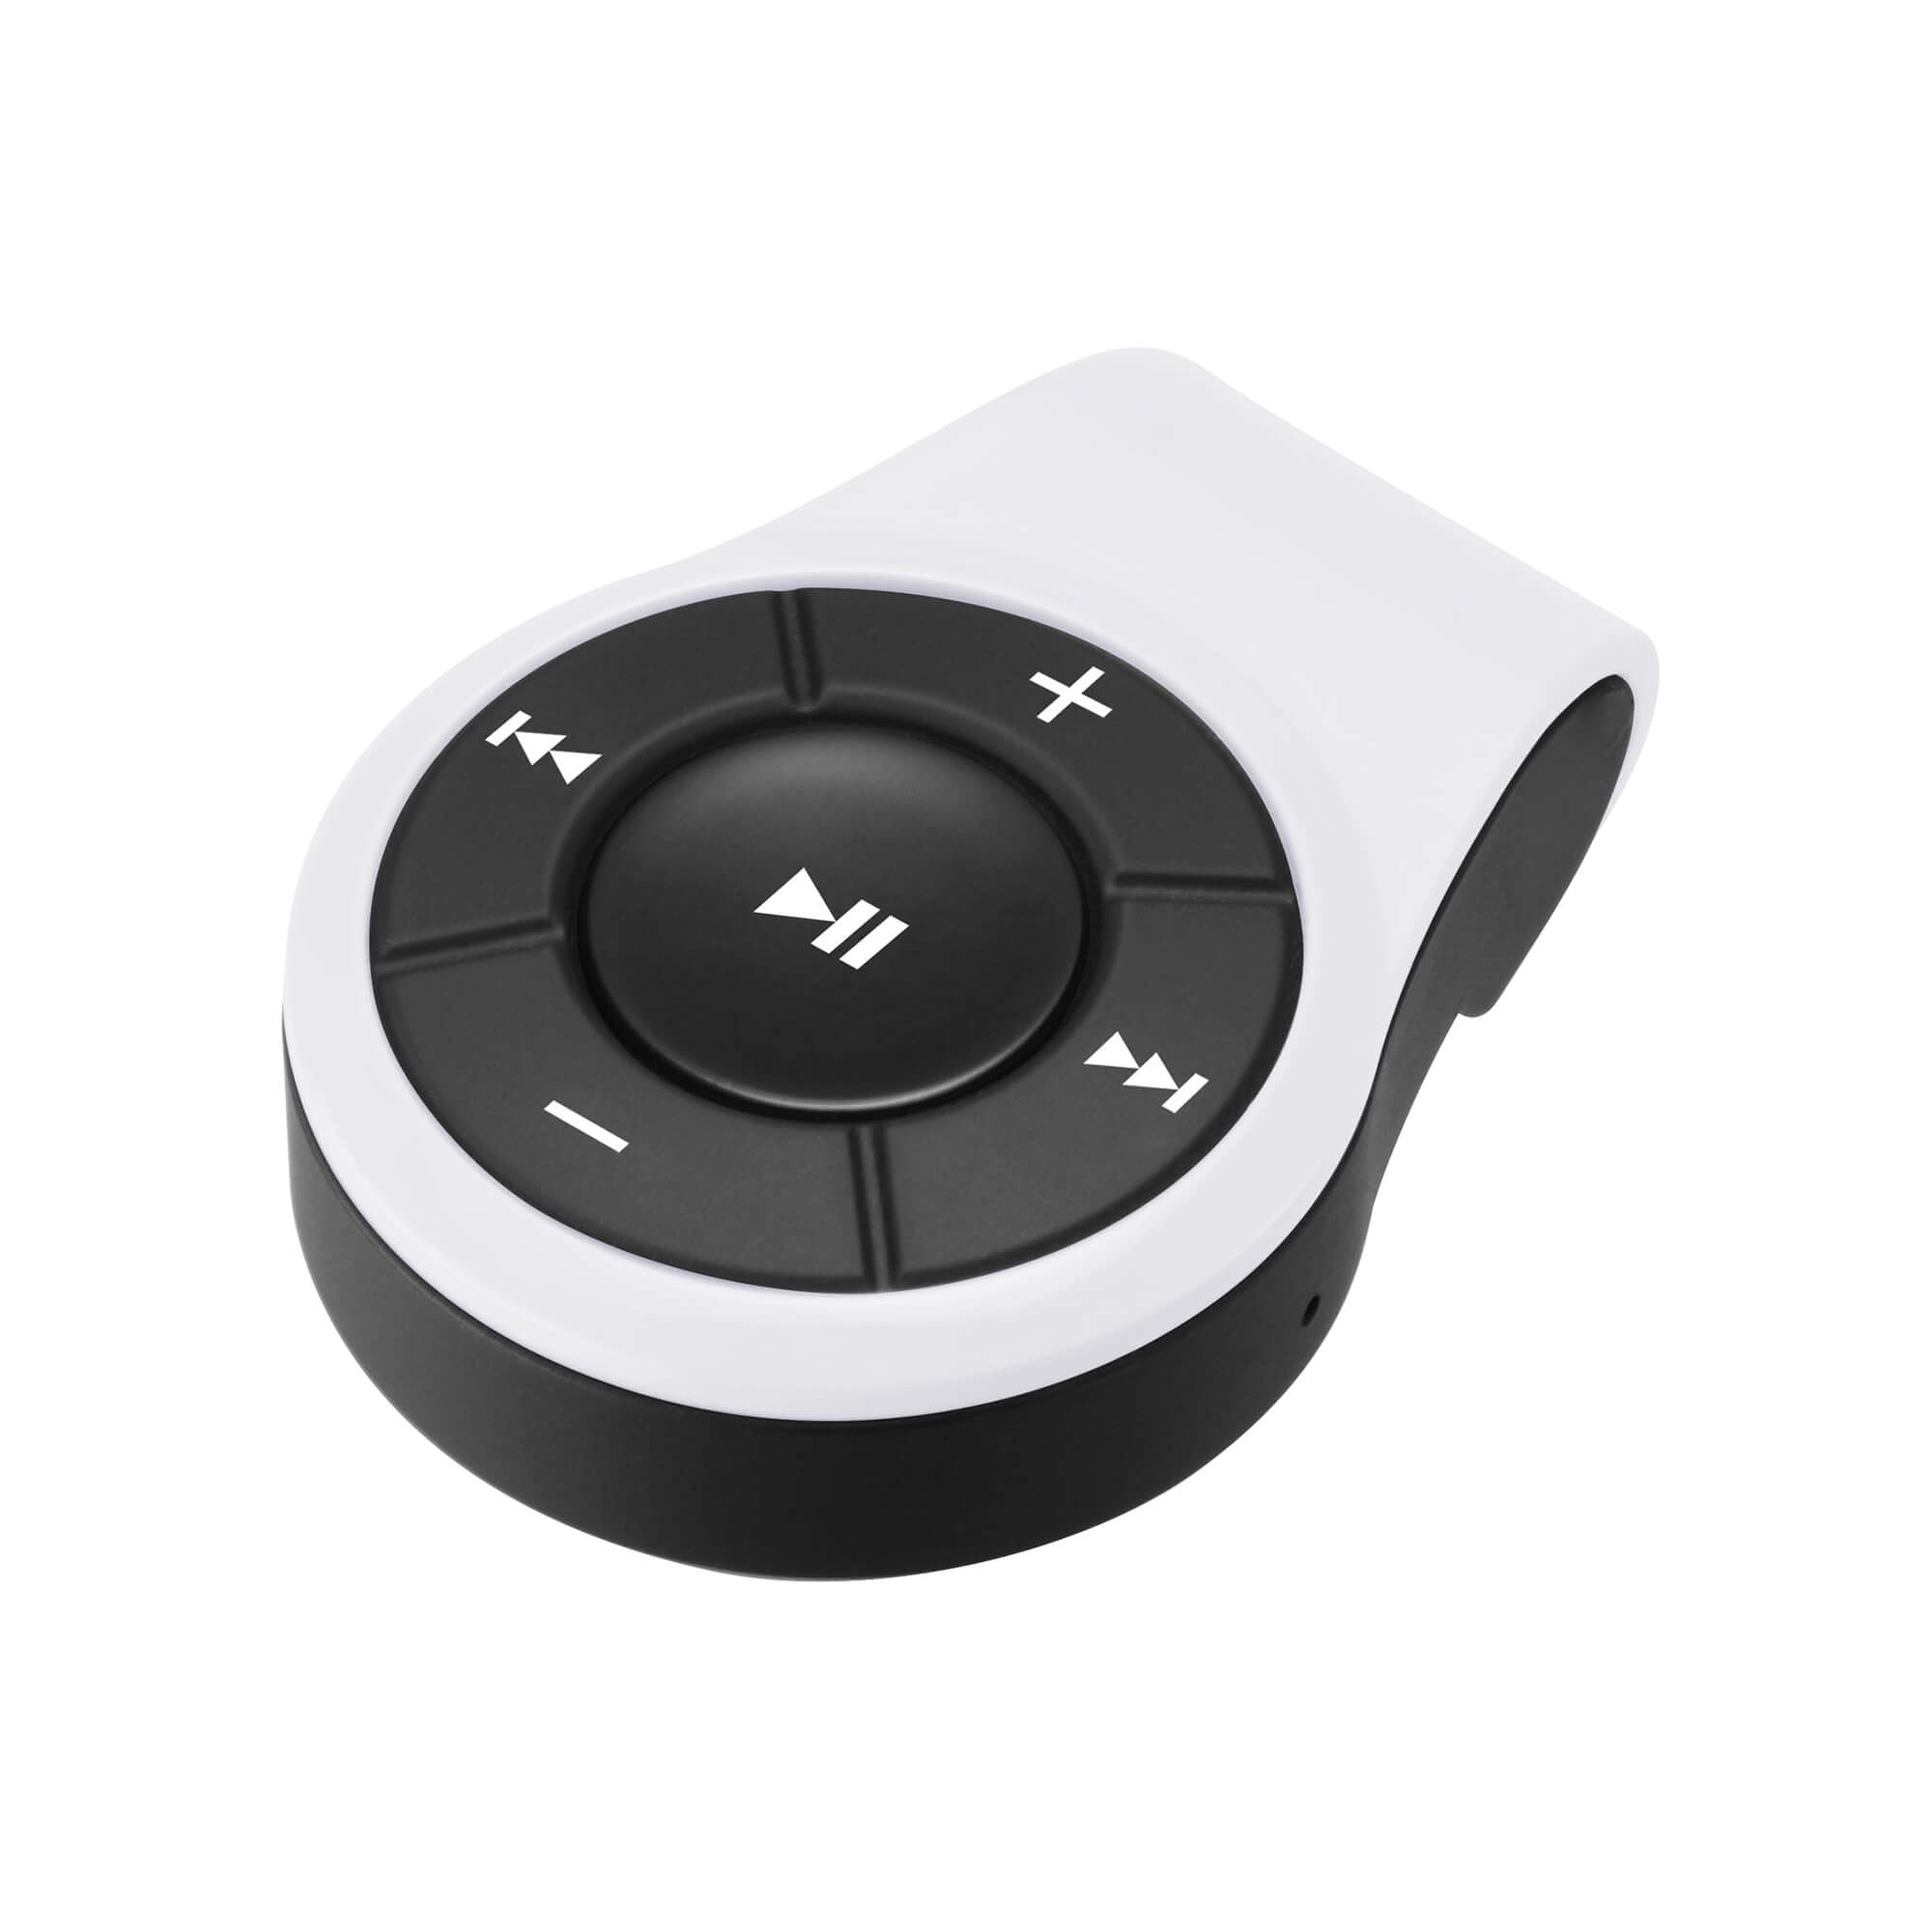 Bluetooth オーディオレシーバー GH-BHRA-WH ホワイト 白 クリップ付 usb 音楽 ワイヤレス イヤホン ワイヤレス化 ブルートゥース ハンズフリー MP3プレーヤー ヘッドホン イヤフォン グリーンハウス